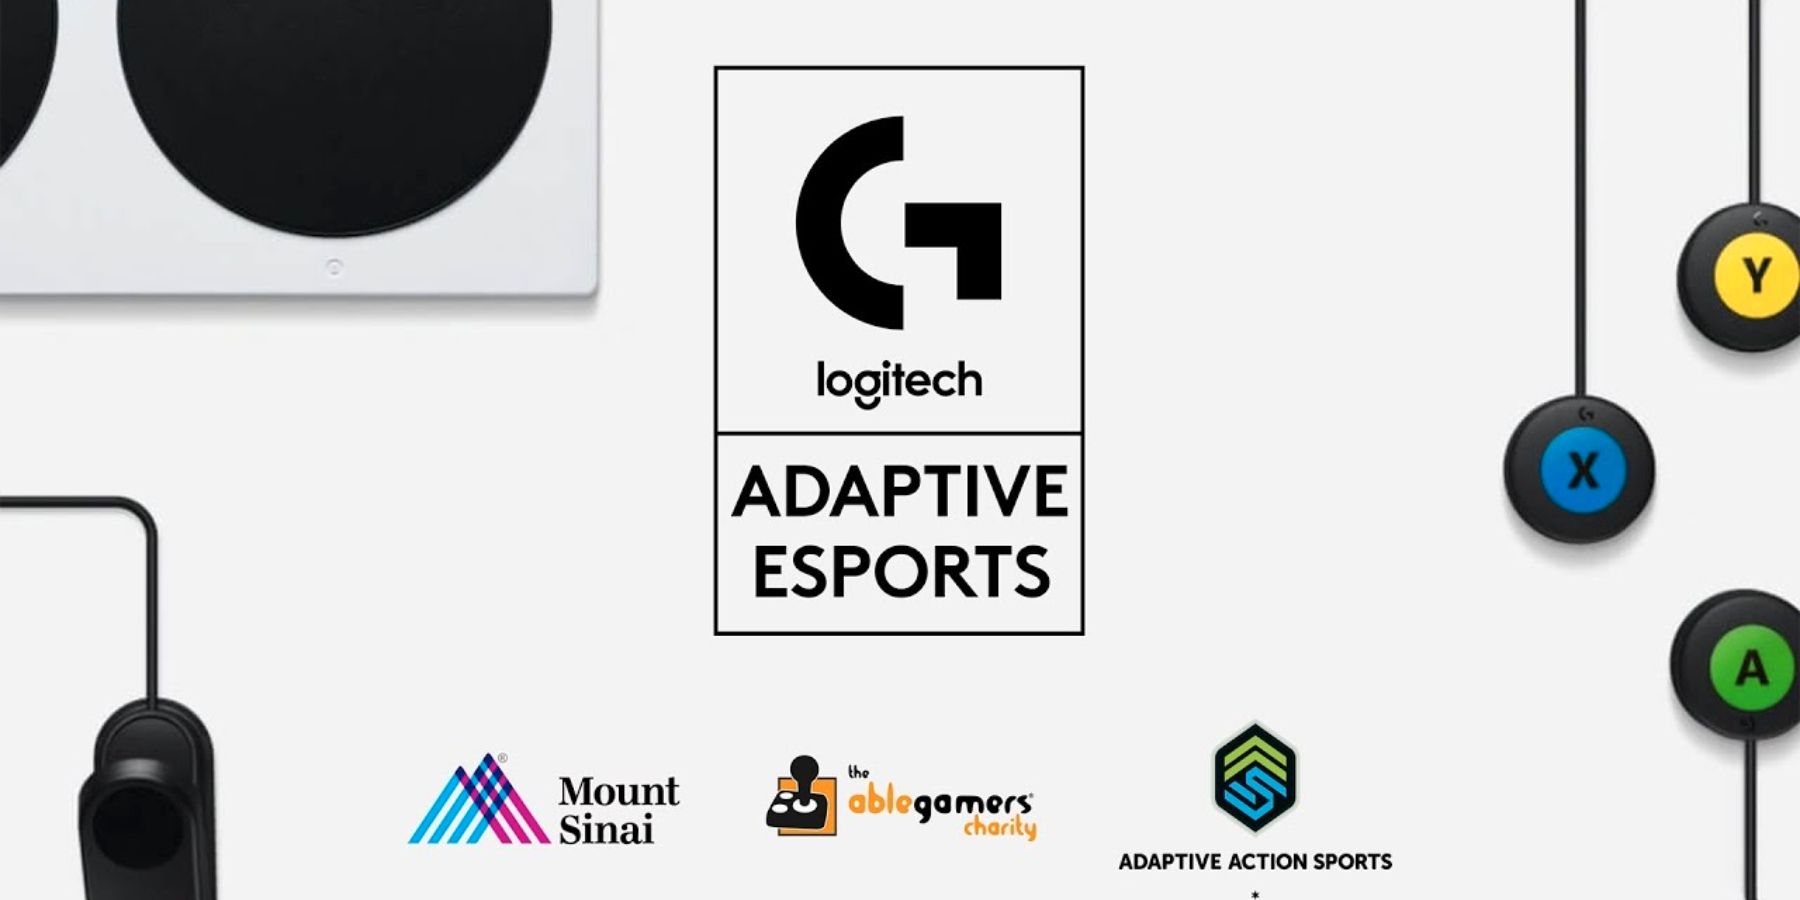 Logitech G проводит соревнования по адаптивному киберспорту для геймеров с ограниченными возможностями